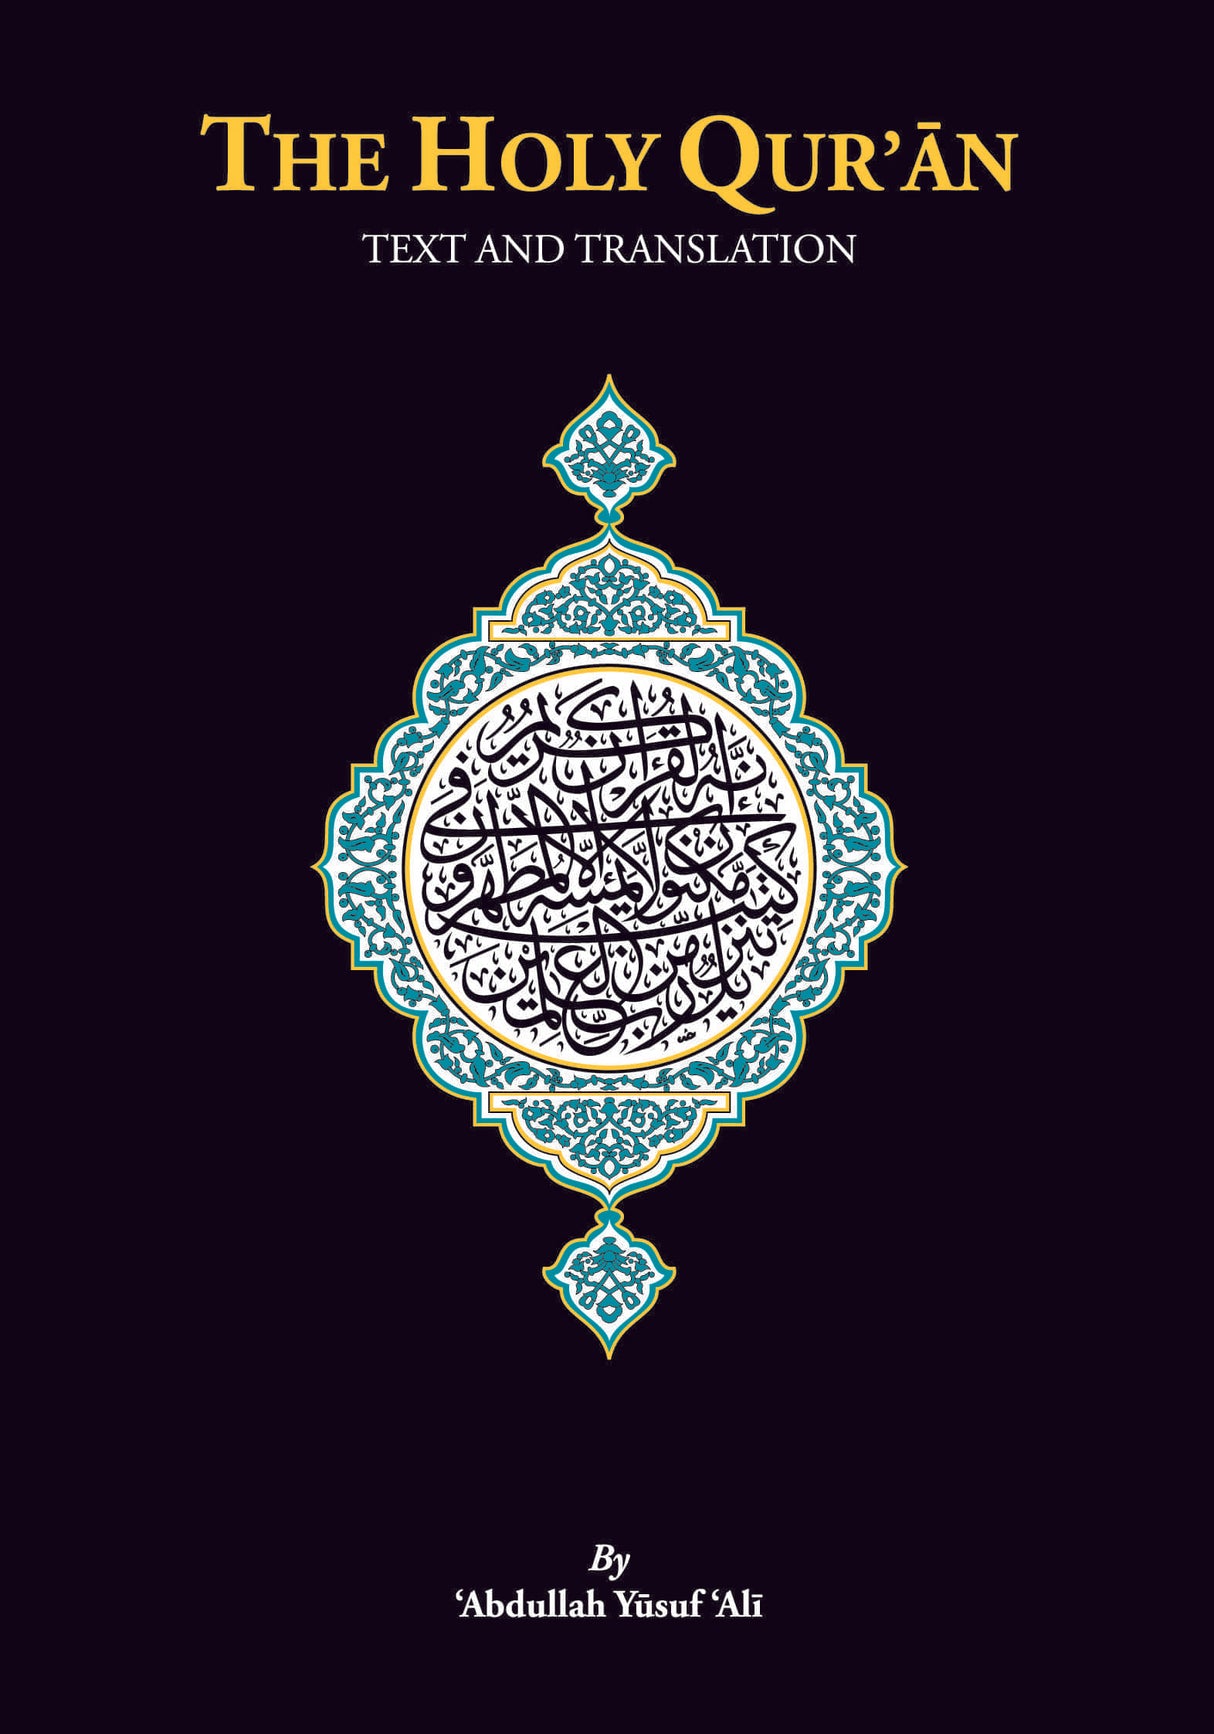 The Holy Quran: Arabic & English (19cmx13.5)